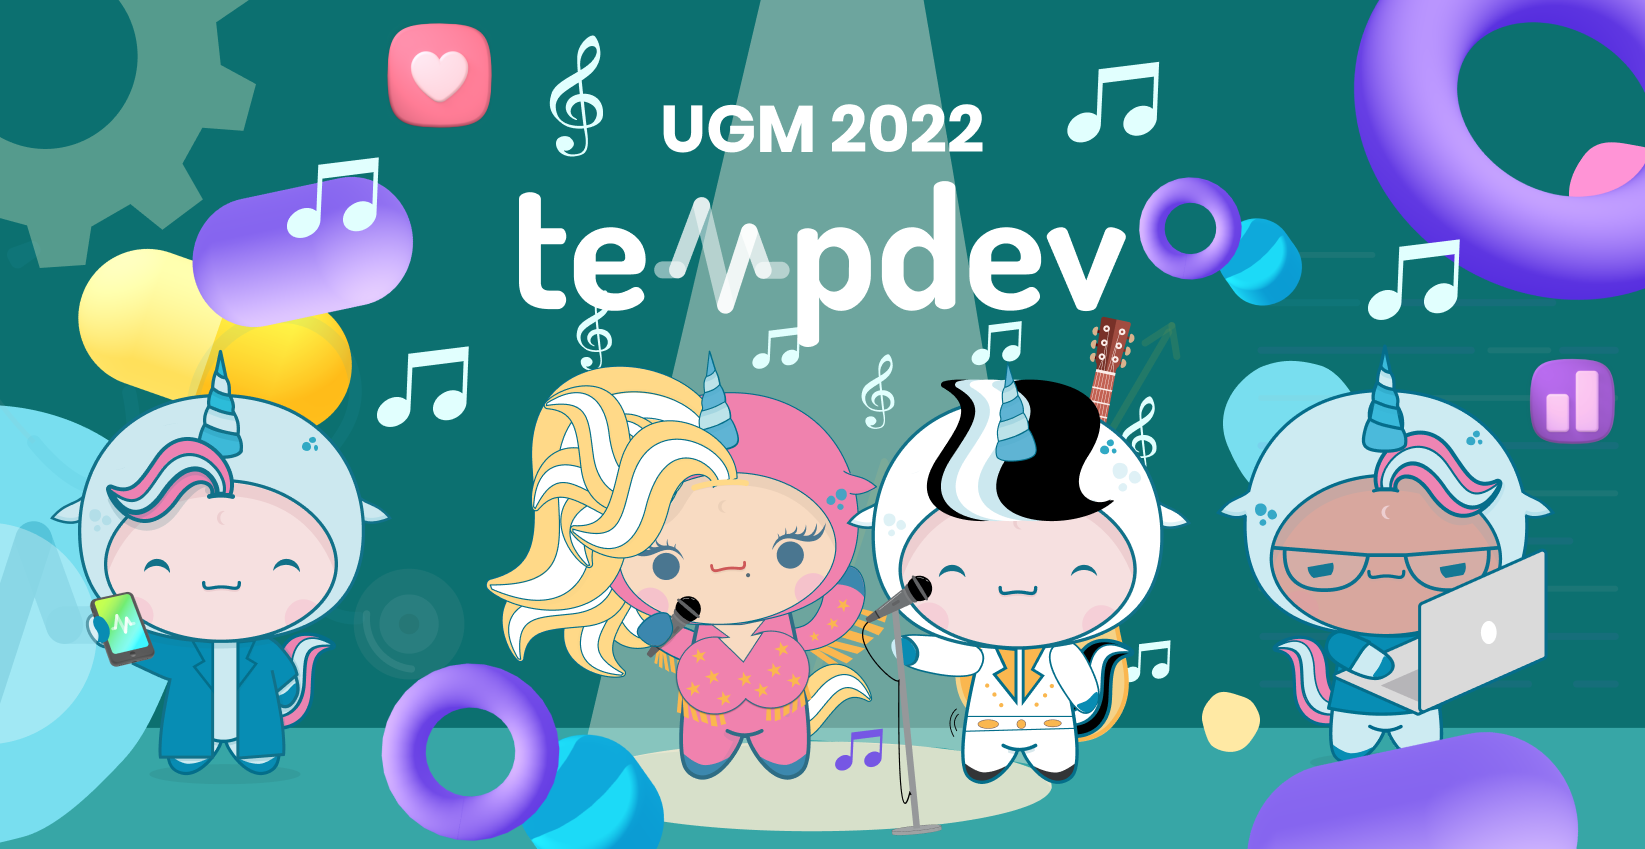 Come Meet Team TempDev at NextGen UGM 2022!